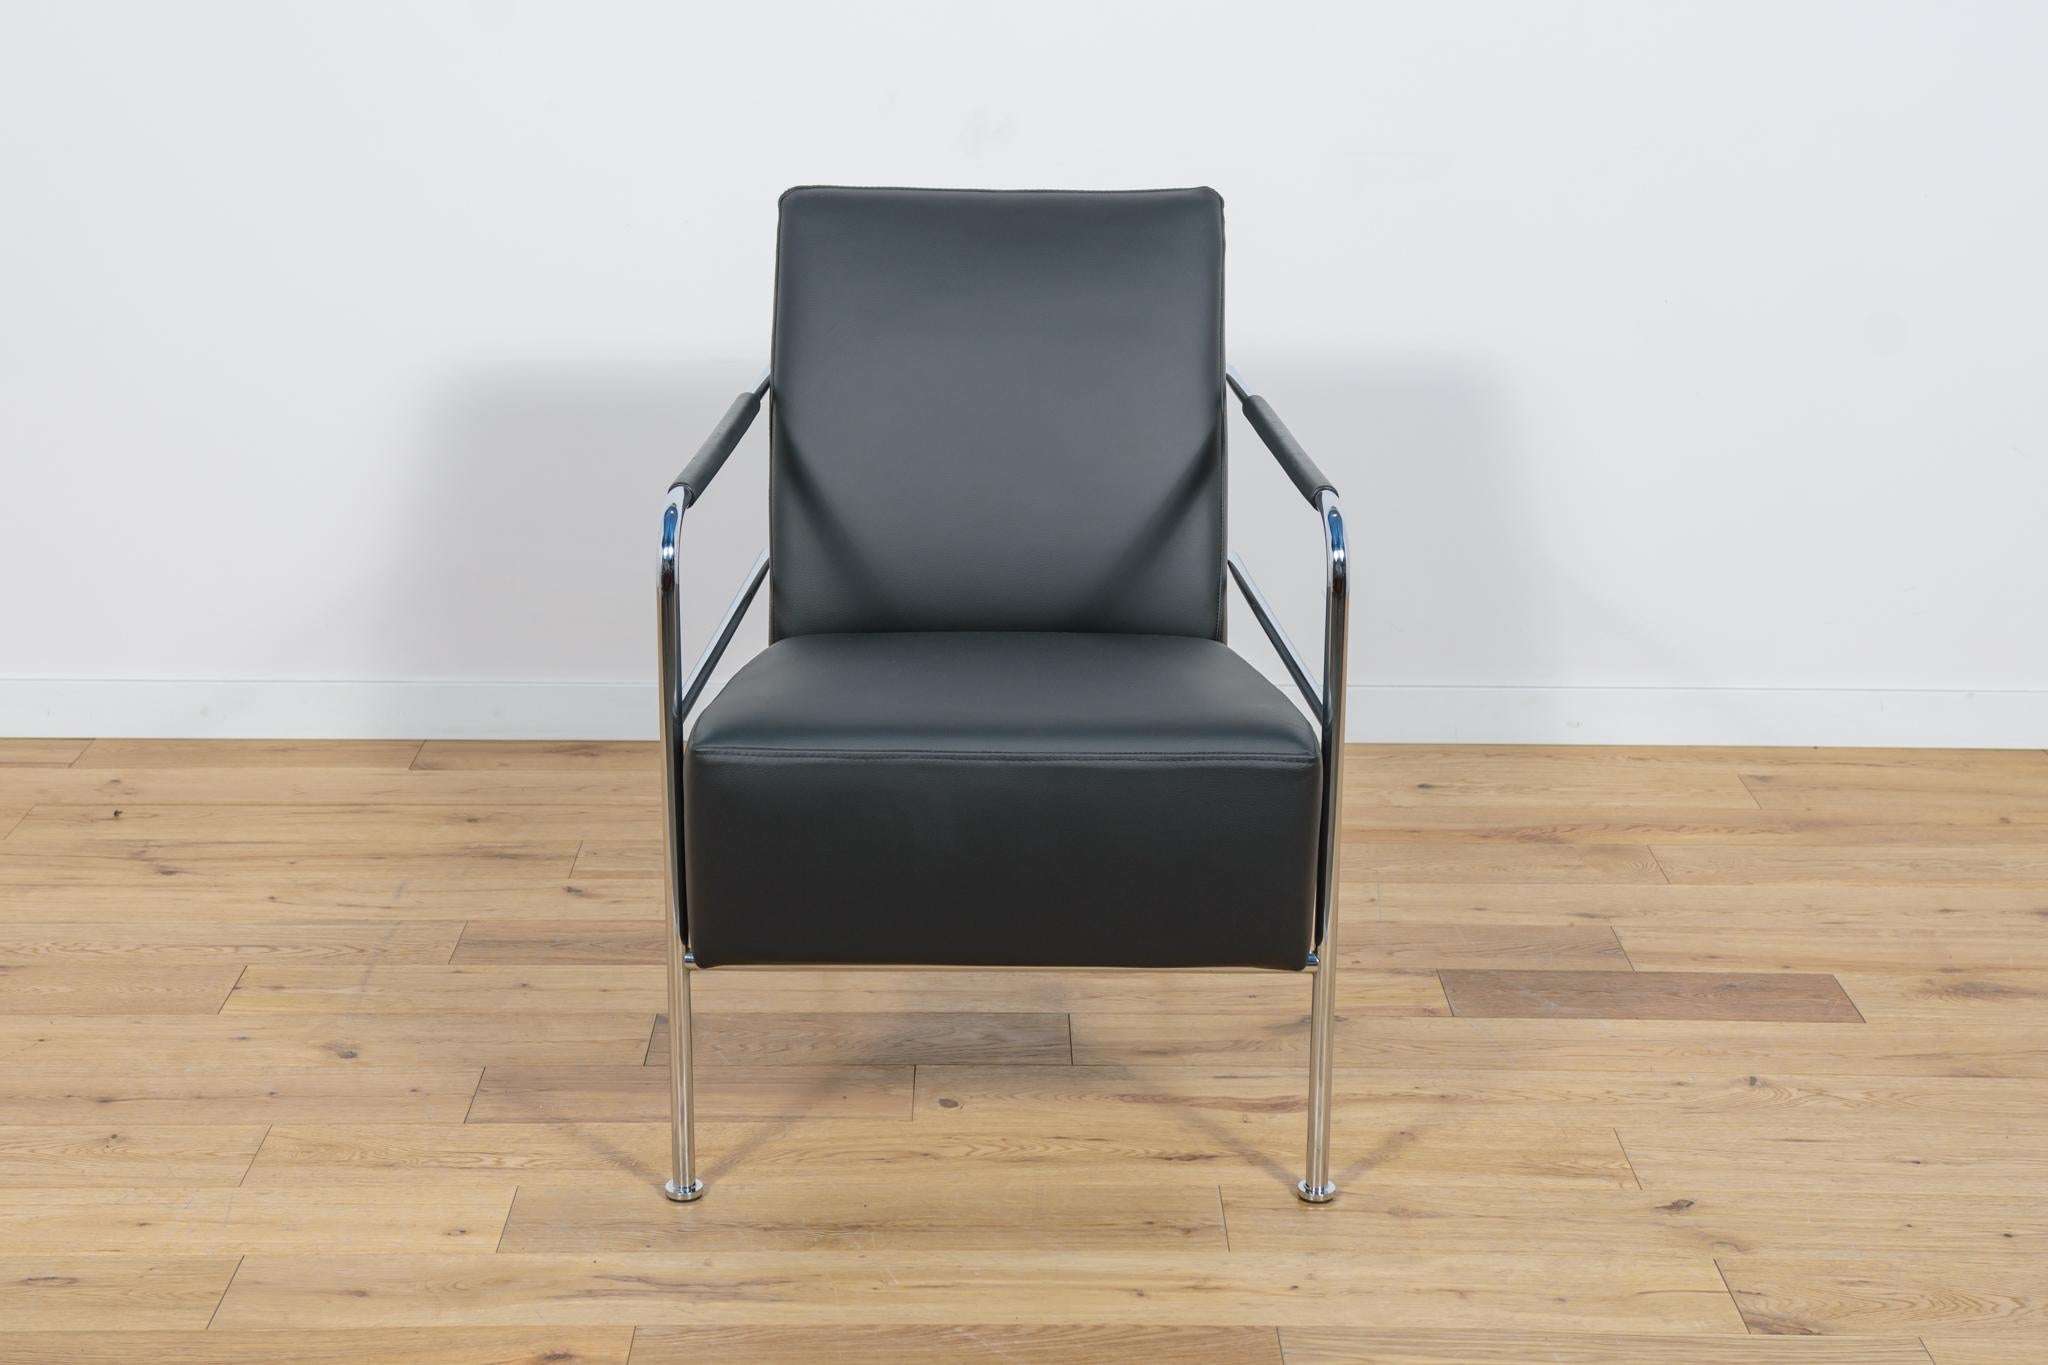 Le fauteuil Cinema Armchair a été conçu par Gunilla Allard pour le fabricant suédois Lammhults en 1994. Gunilla Allard s'est inspirée de vieilles voitures de sport, ce qui lui a permis de créer les détails de la collection - chrome, coutures et cuir